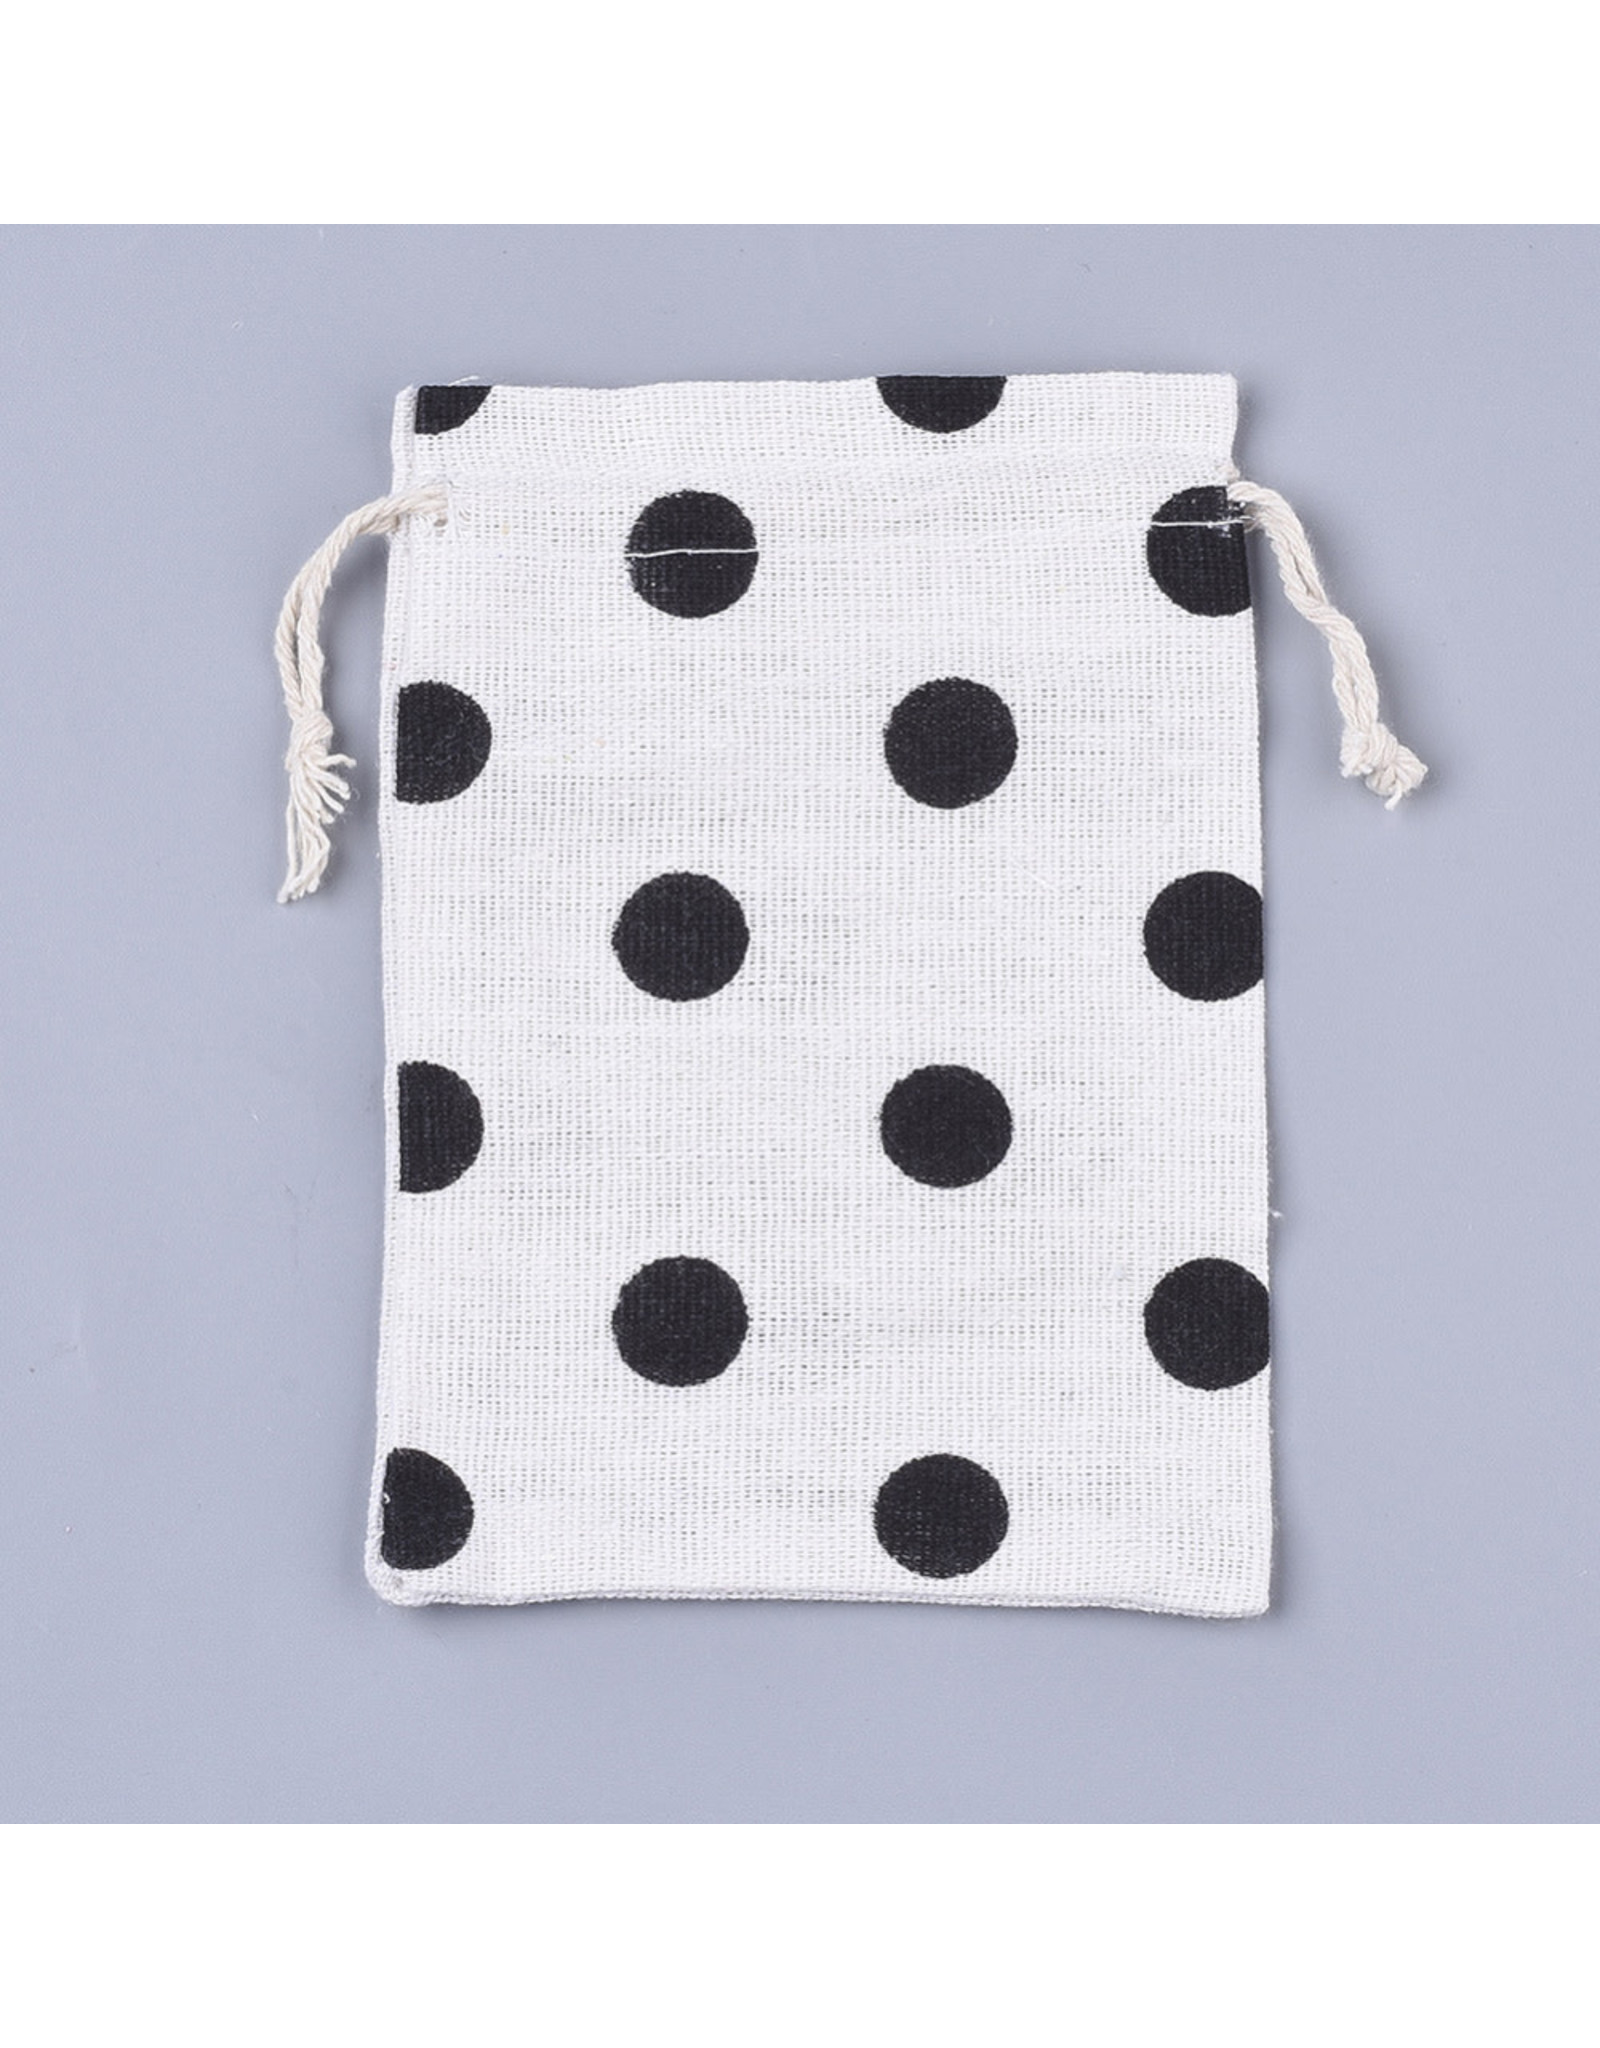 Gift Bag Black Polka Dots  14x10cm  x5